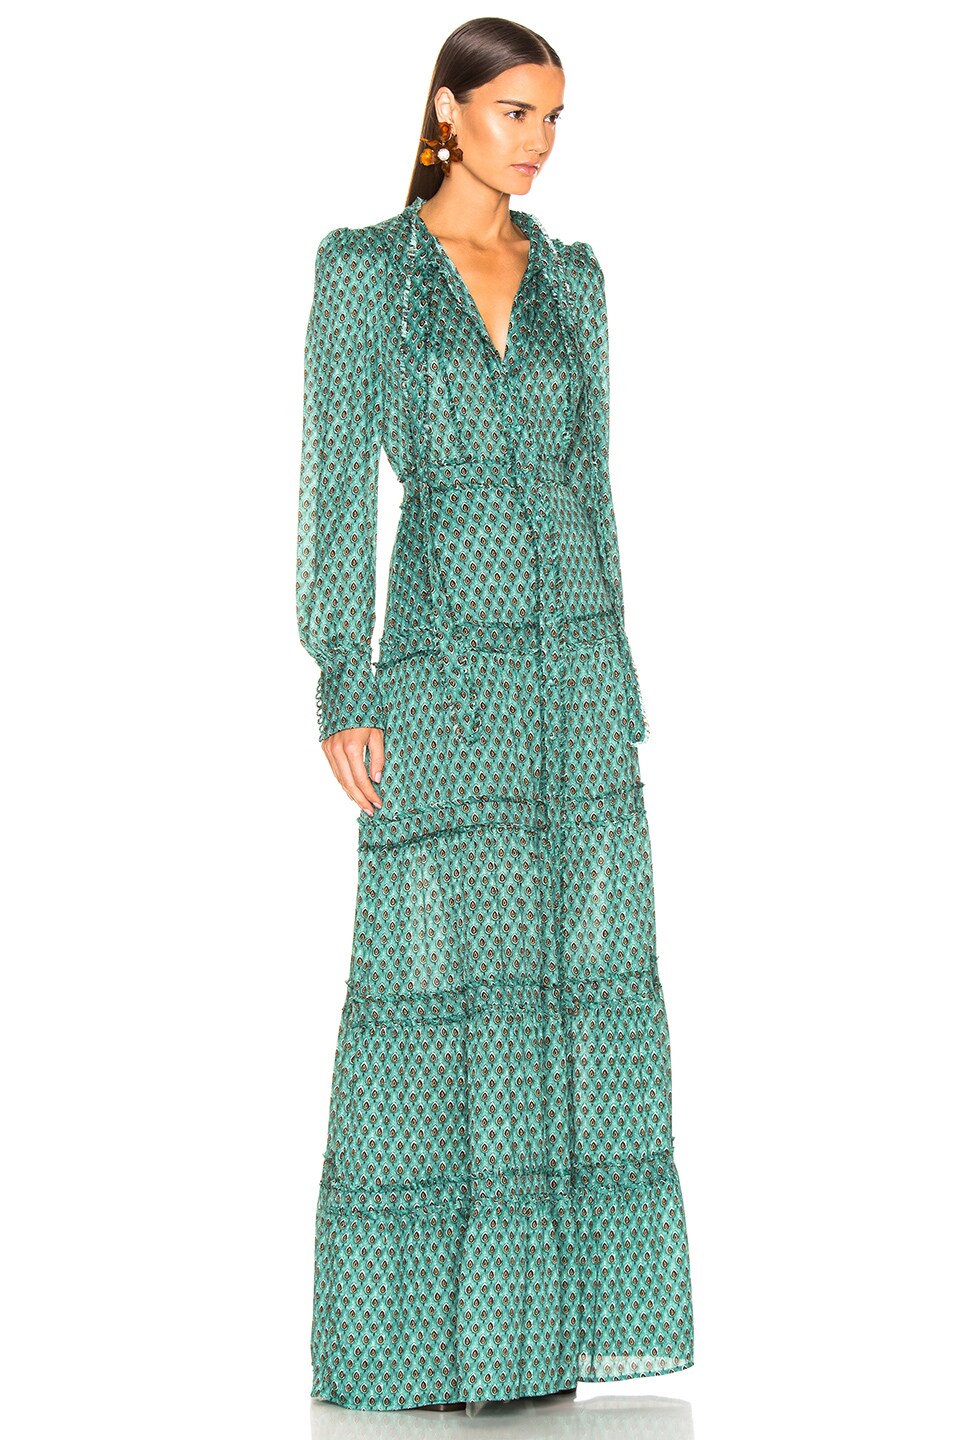 Alexis Margeaux Dress in Mint Green | FWRD